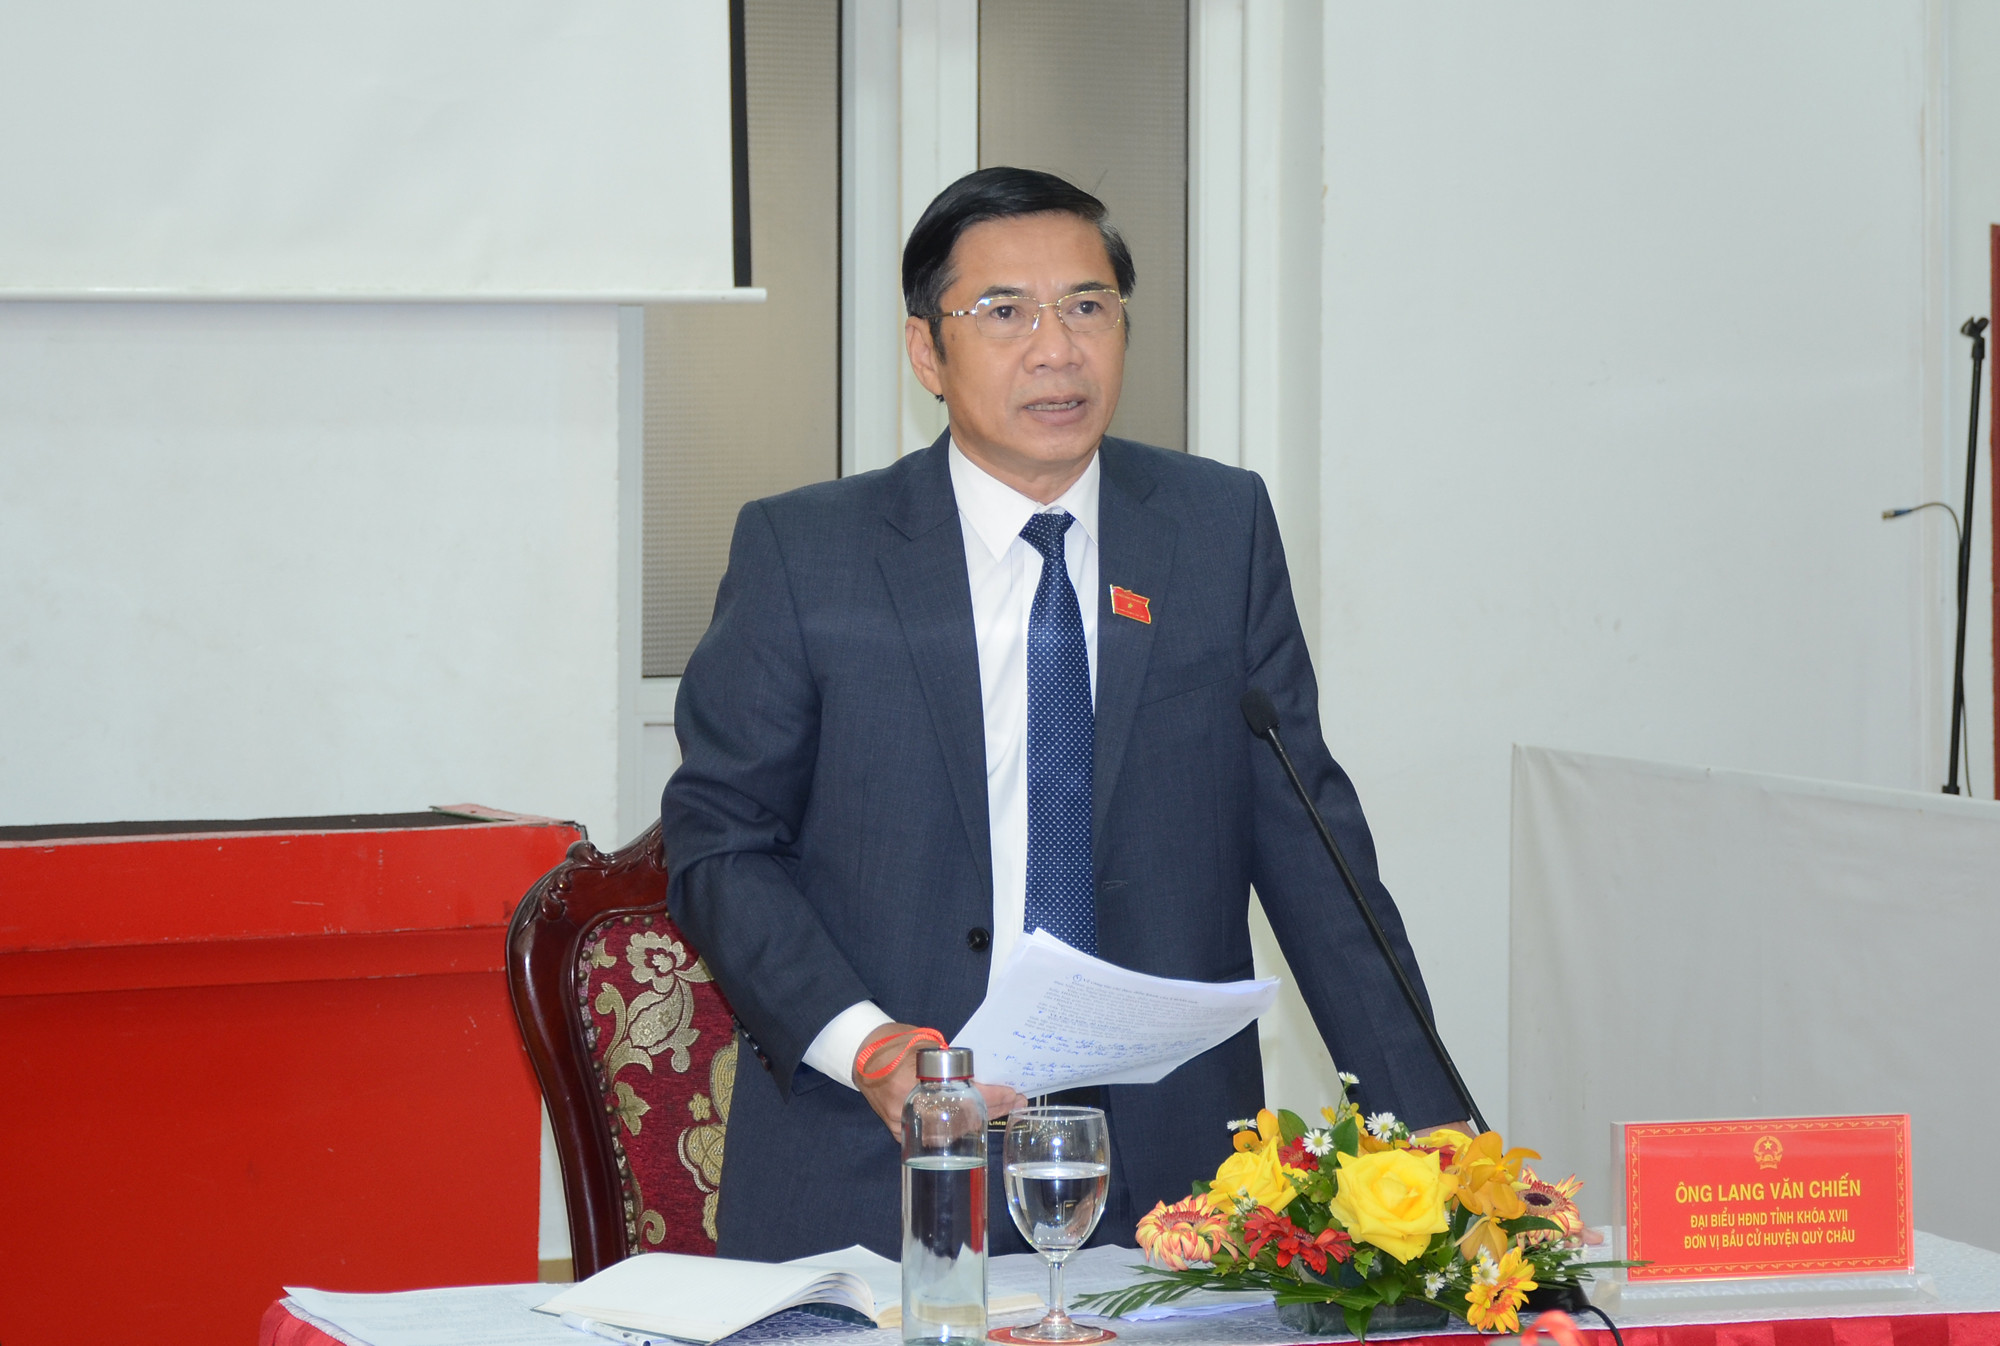 Đại biểu Lang Văn Chiến, Chủ tịch HĐND Quỳ Châu. Ảnh: Thành Chung